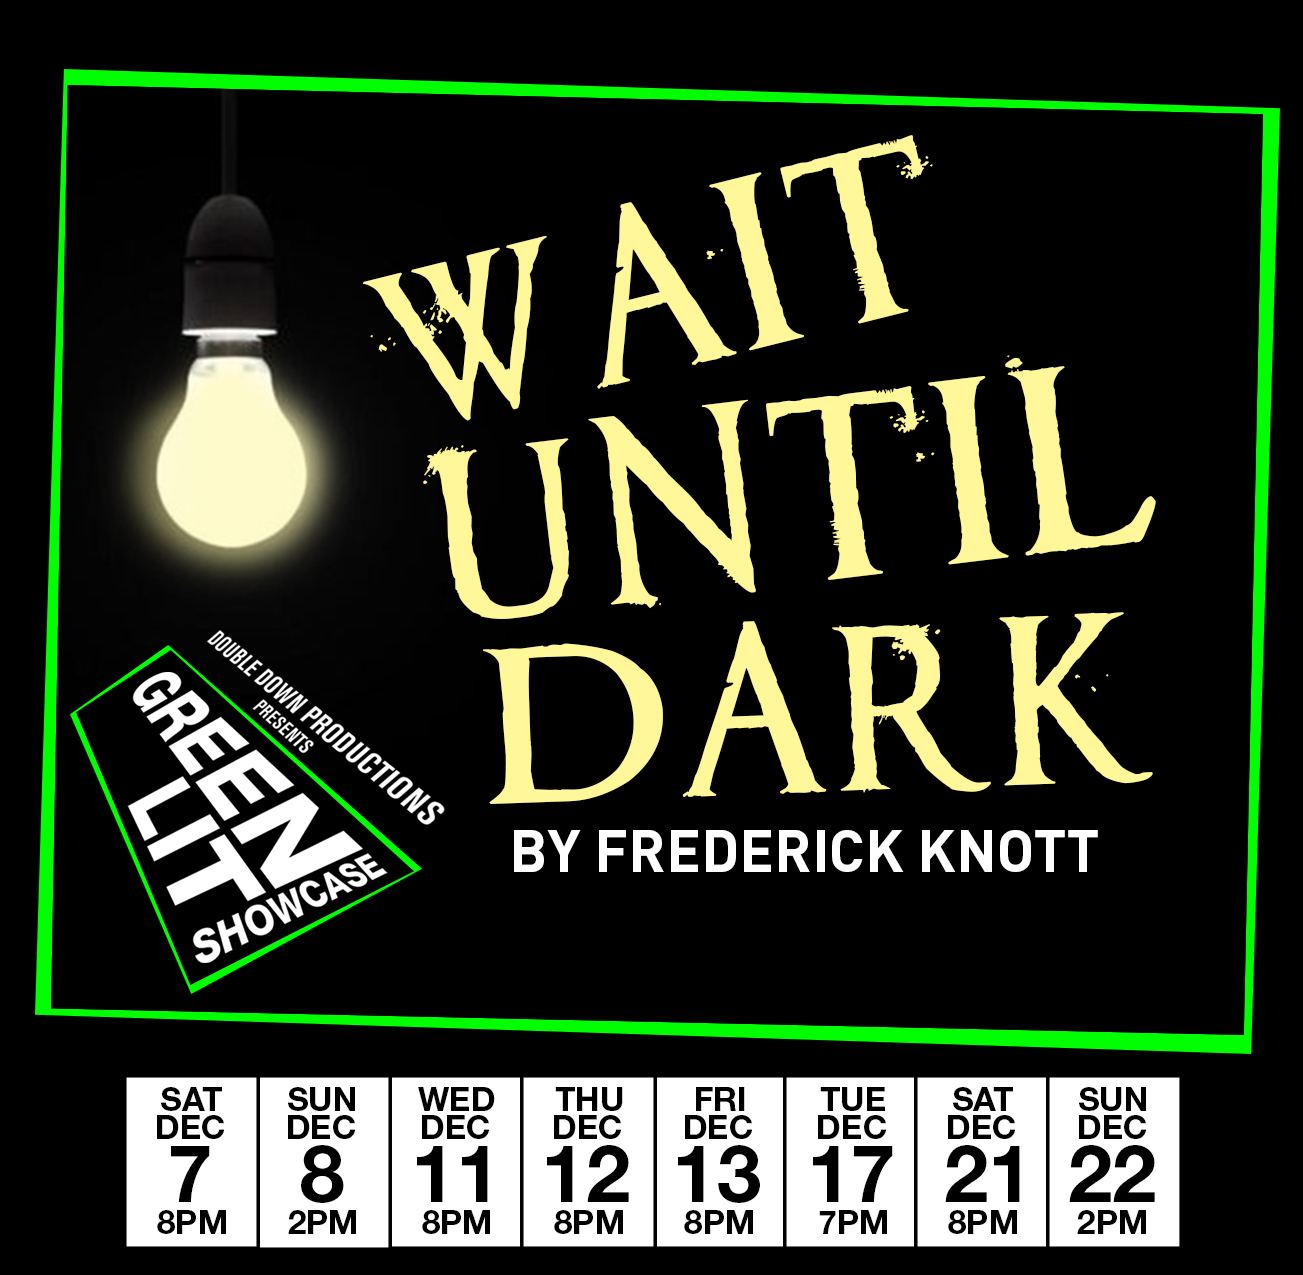 Wait Until Dark - Tue Dec 17th